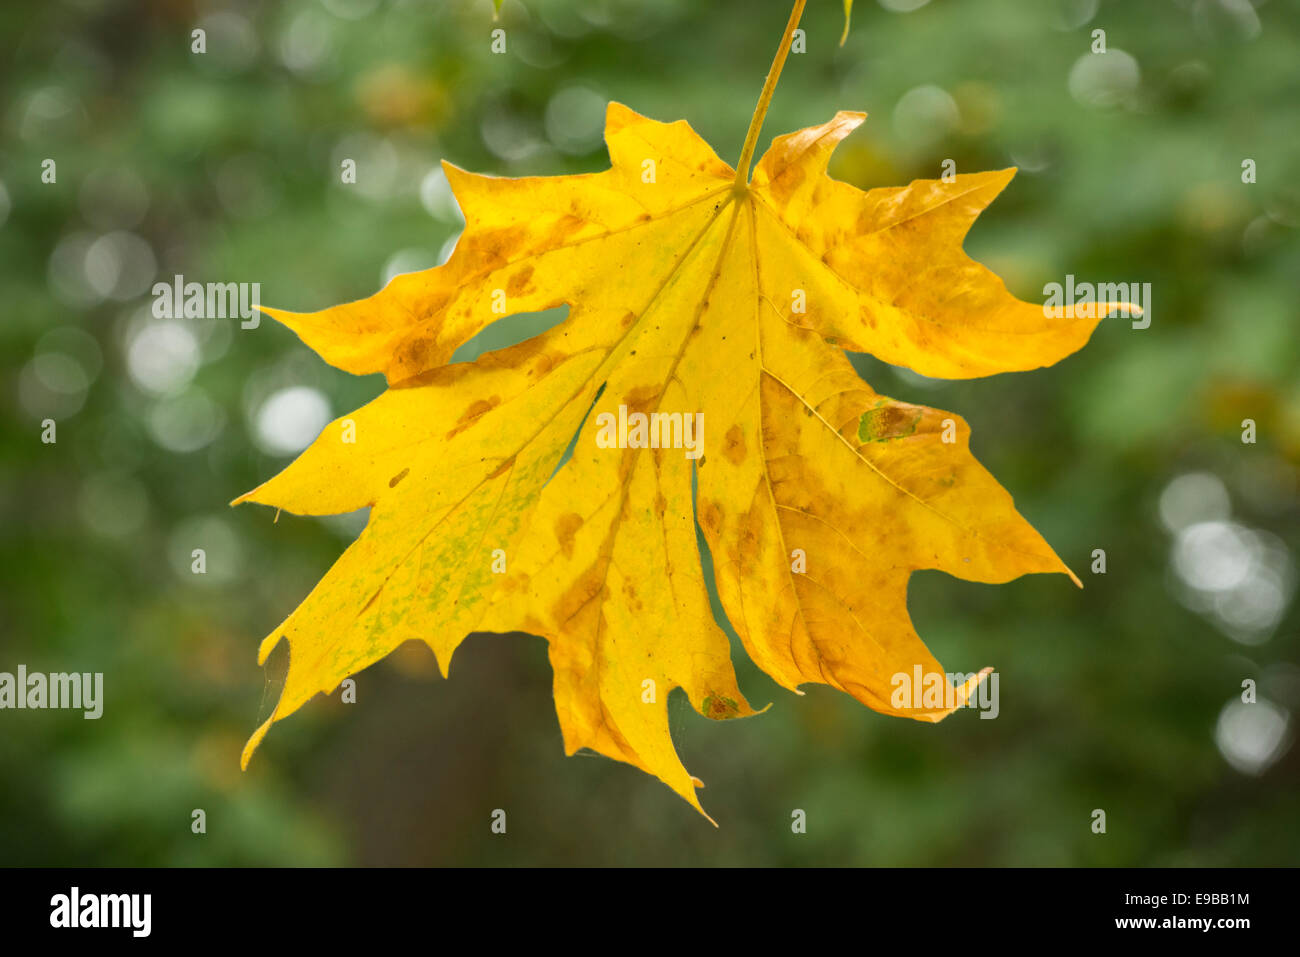 Bigleaf maple tree leaf in autumn; Mount Pisgah Arboretum, Willamette Valley, Oregon. Stock Photo